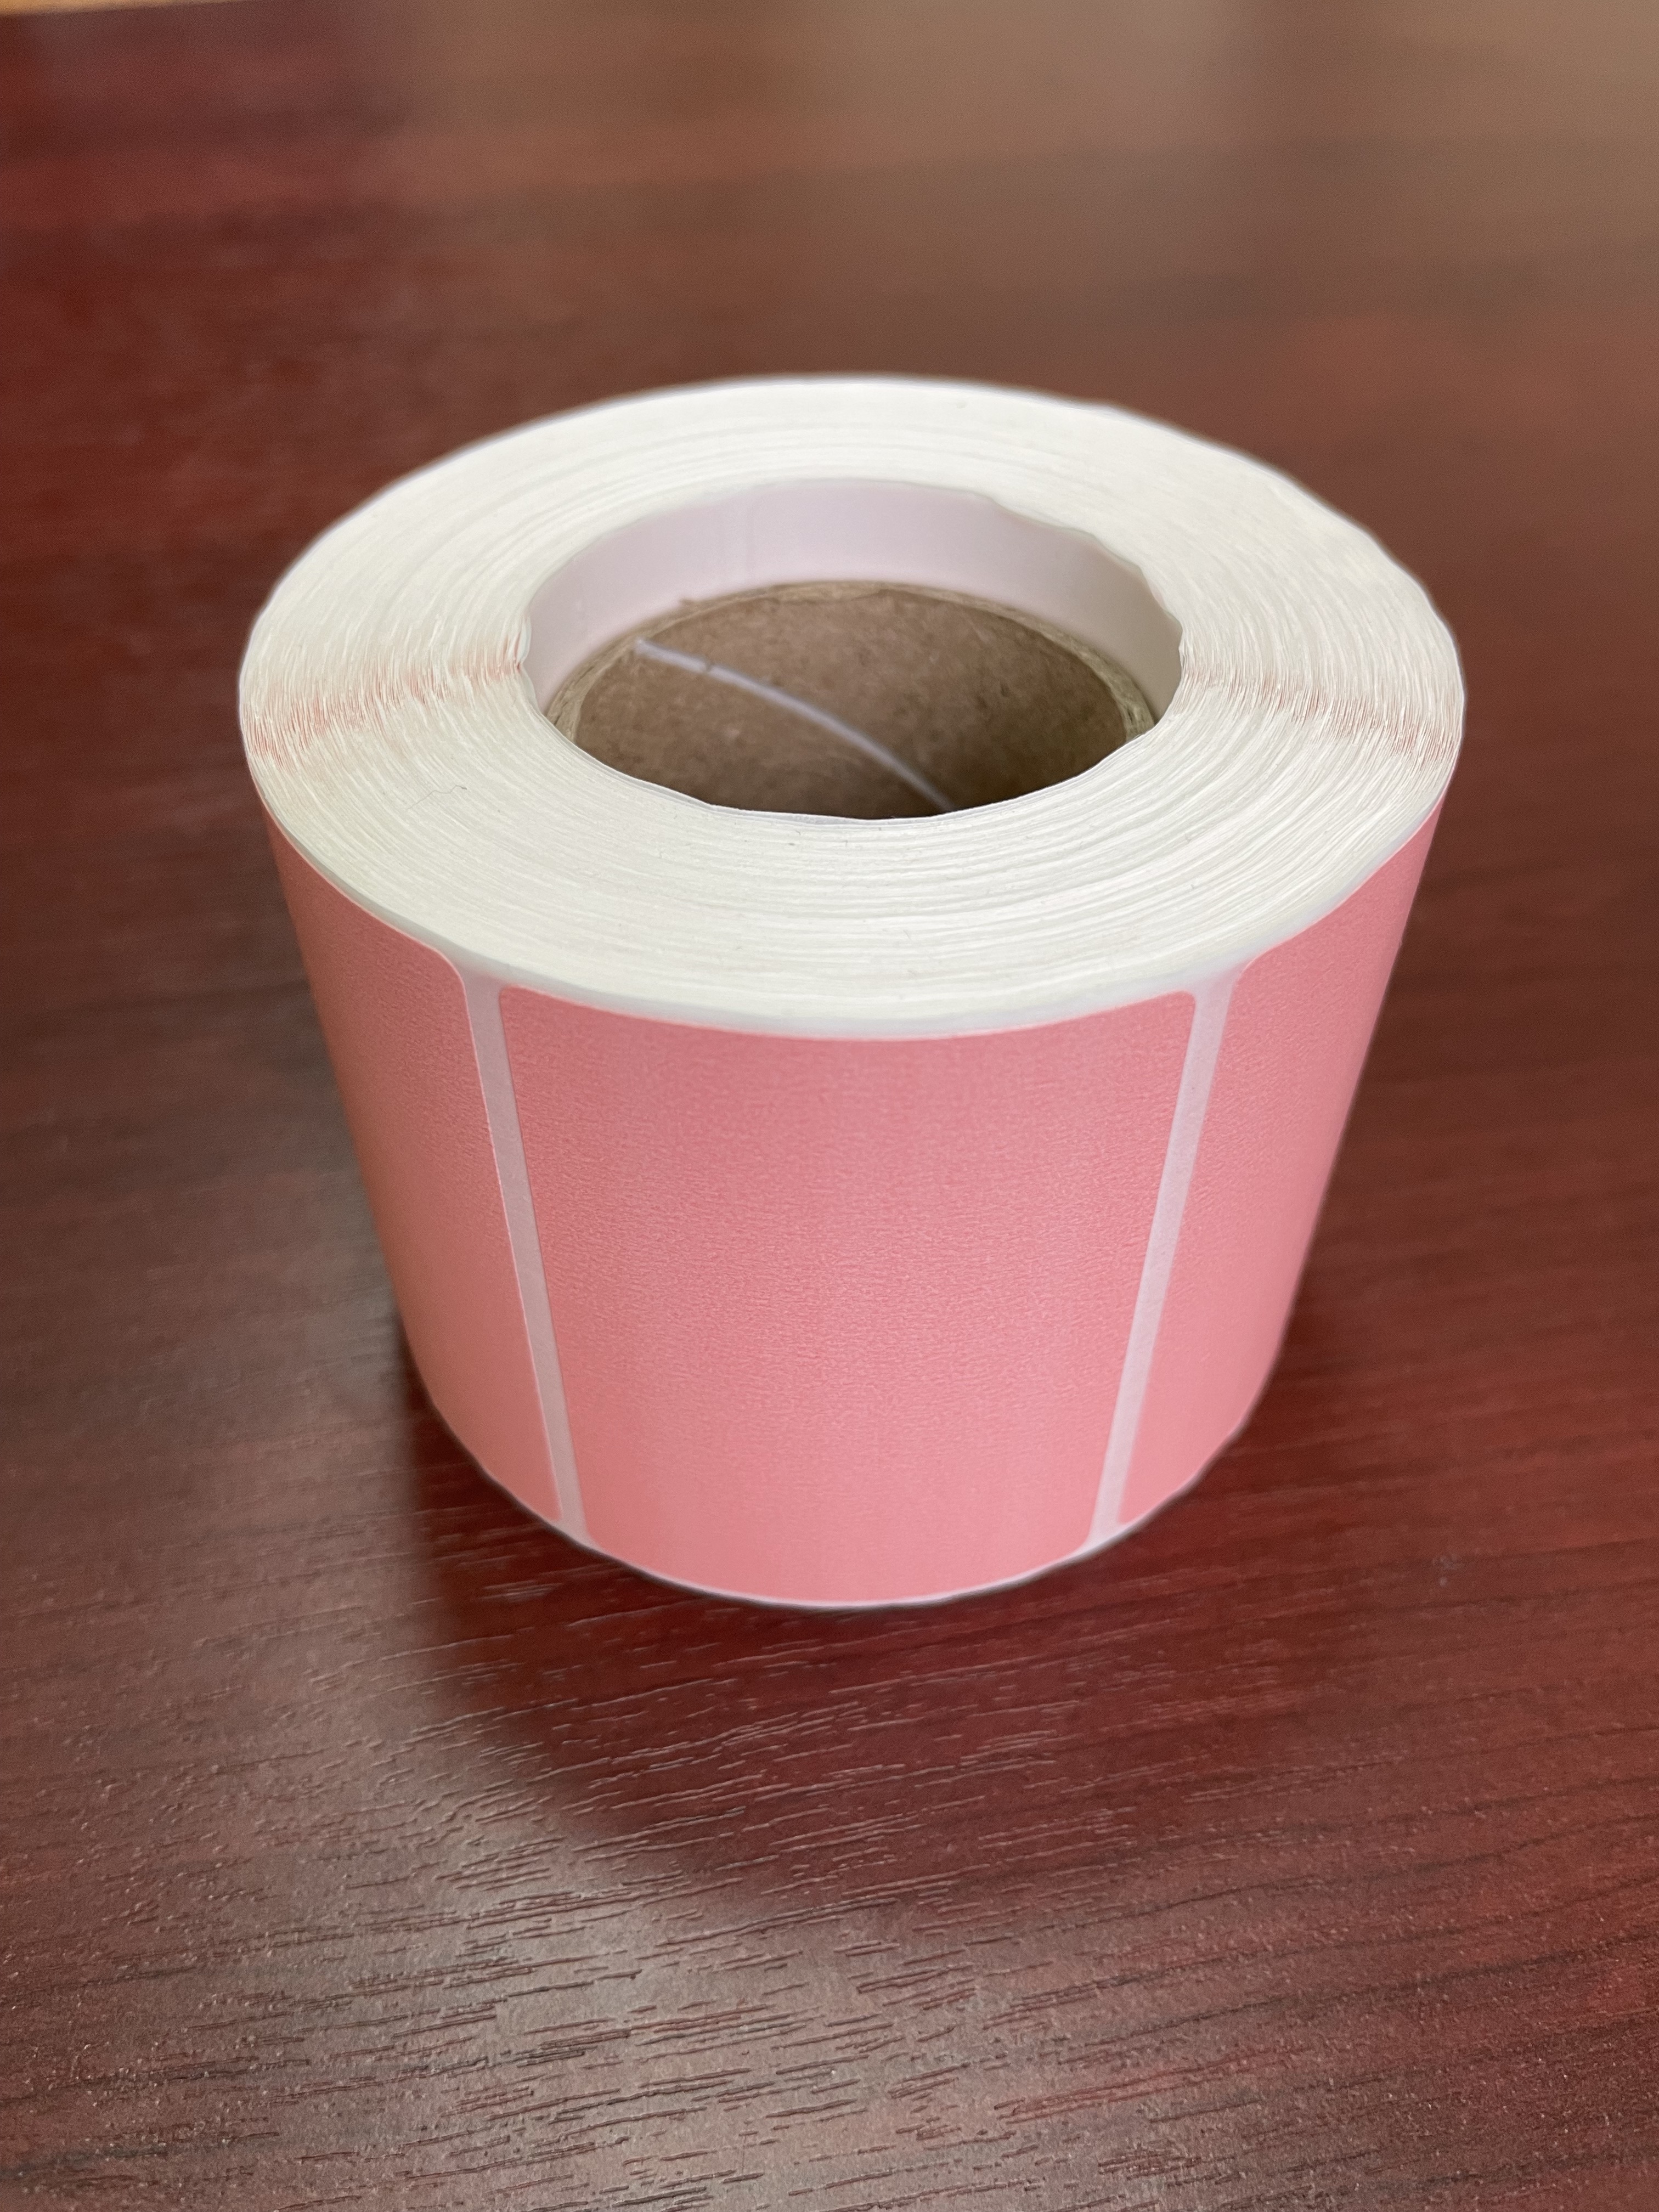 Этикетка 58х40 мм (700 шт. в рулоне) термо ЭКО, розовая, 250 ₽ за упаковку 1000 рулонов